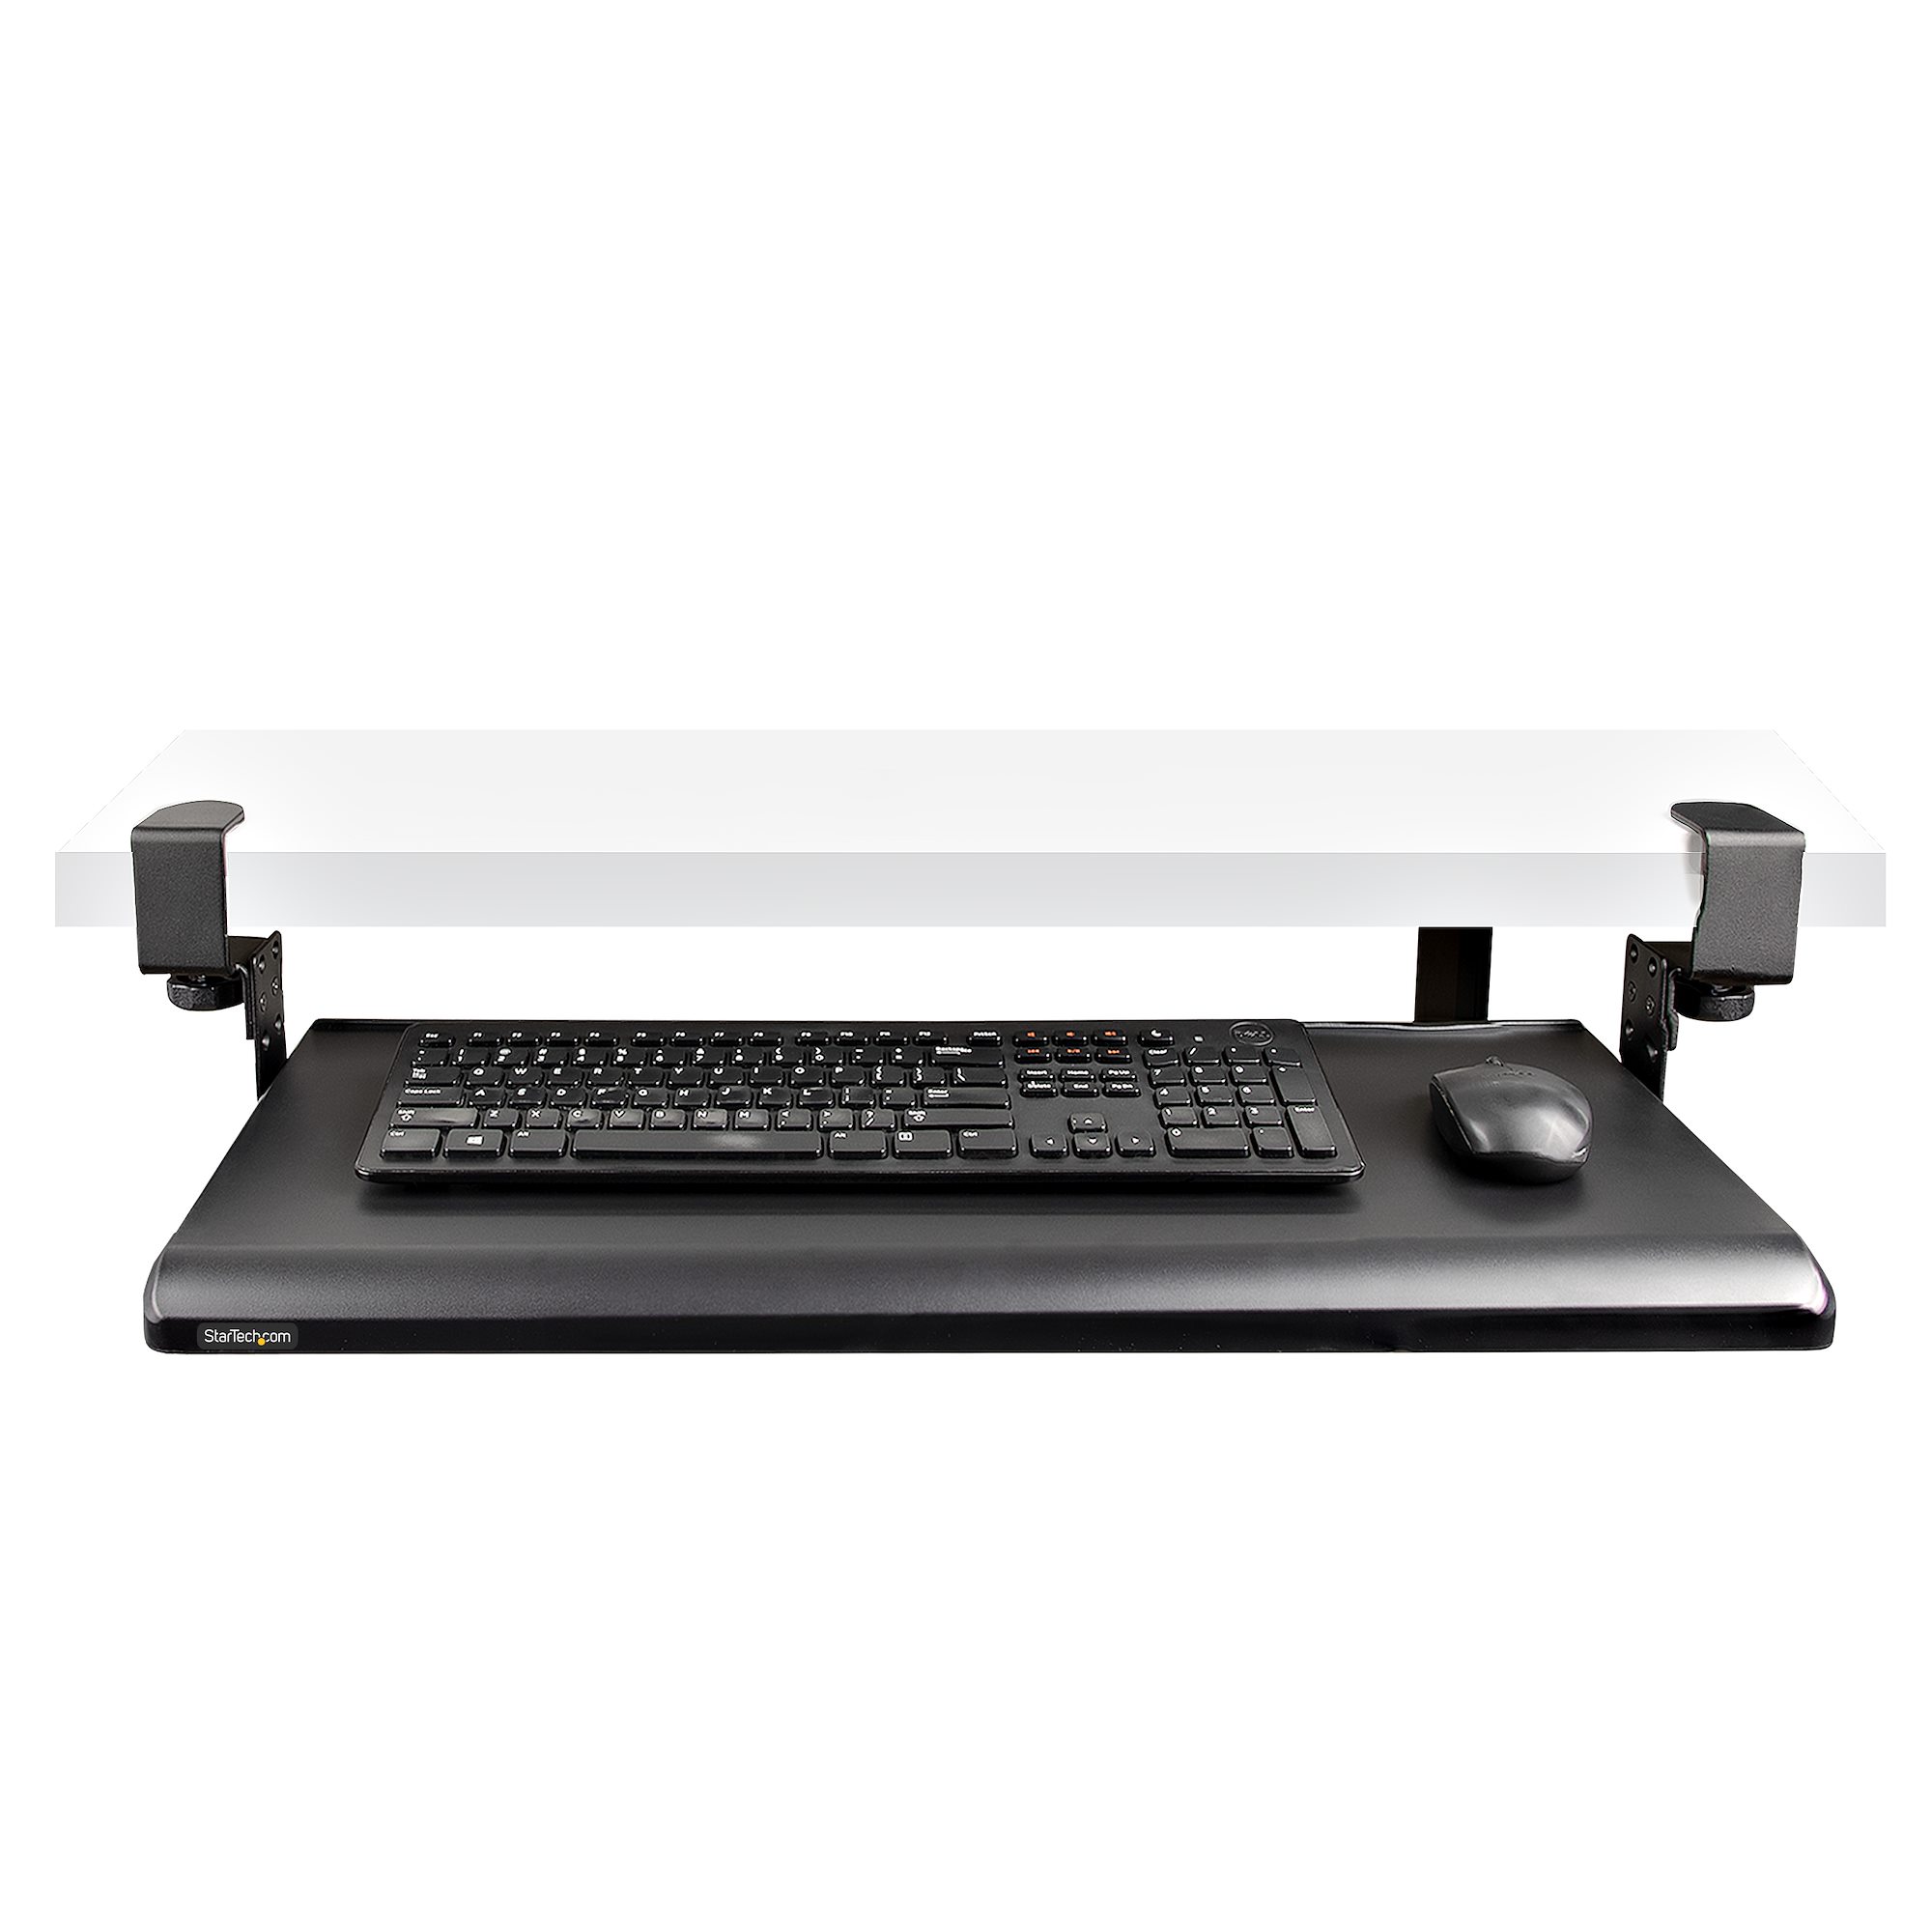 Bandeja deslizante para teclado de 52.9 lbs de carga, estante para teclado  debajo del escritorio, soporte para teclado y mouse, instalación sin